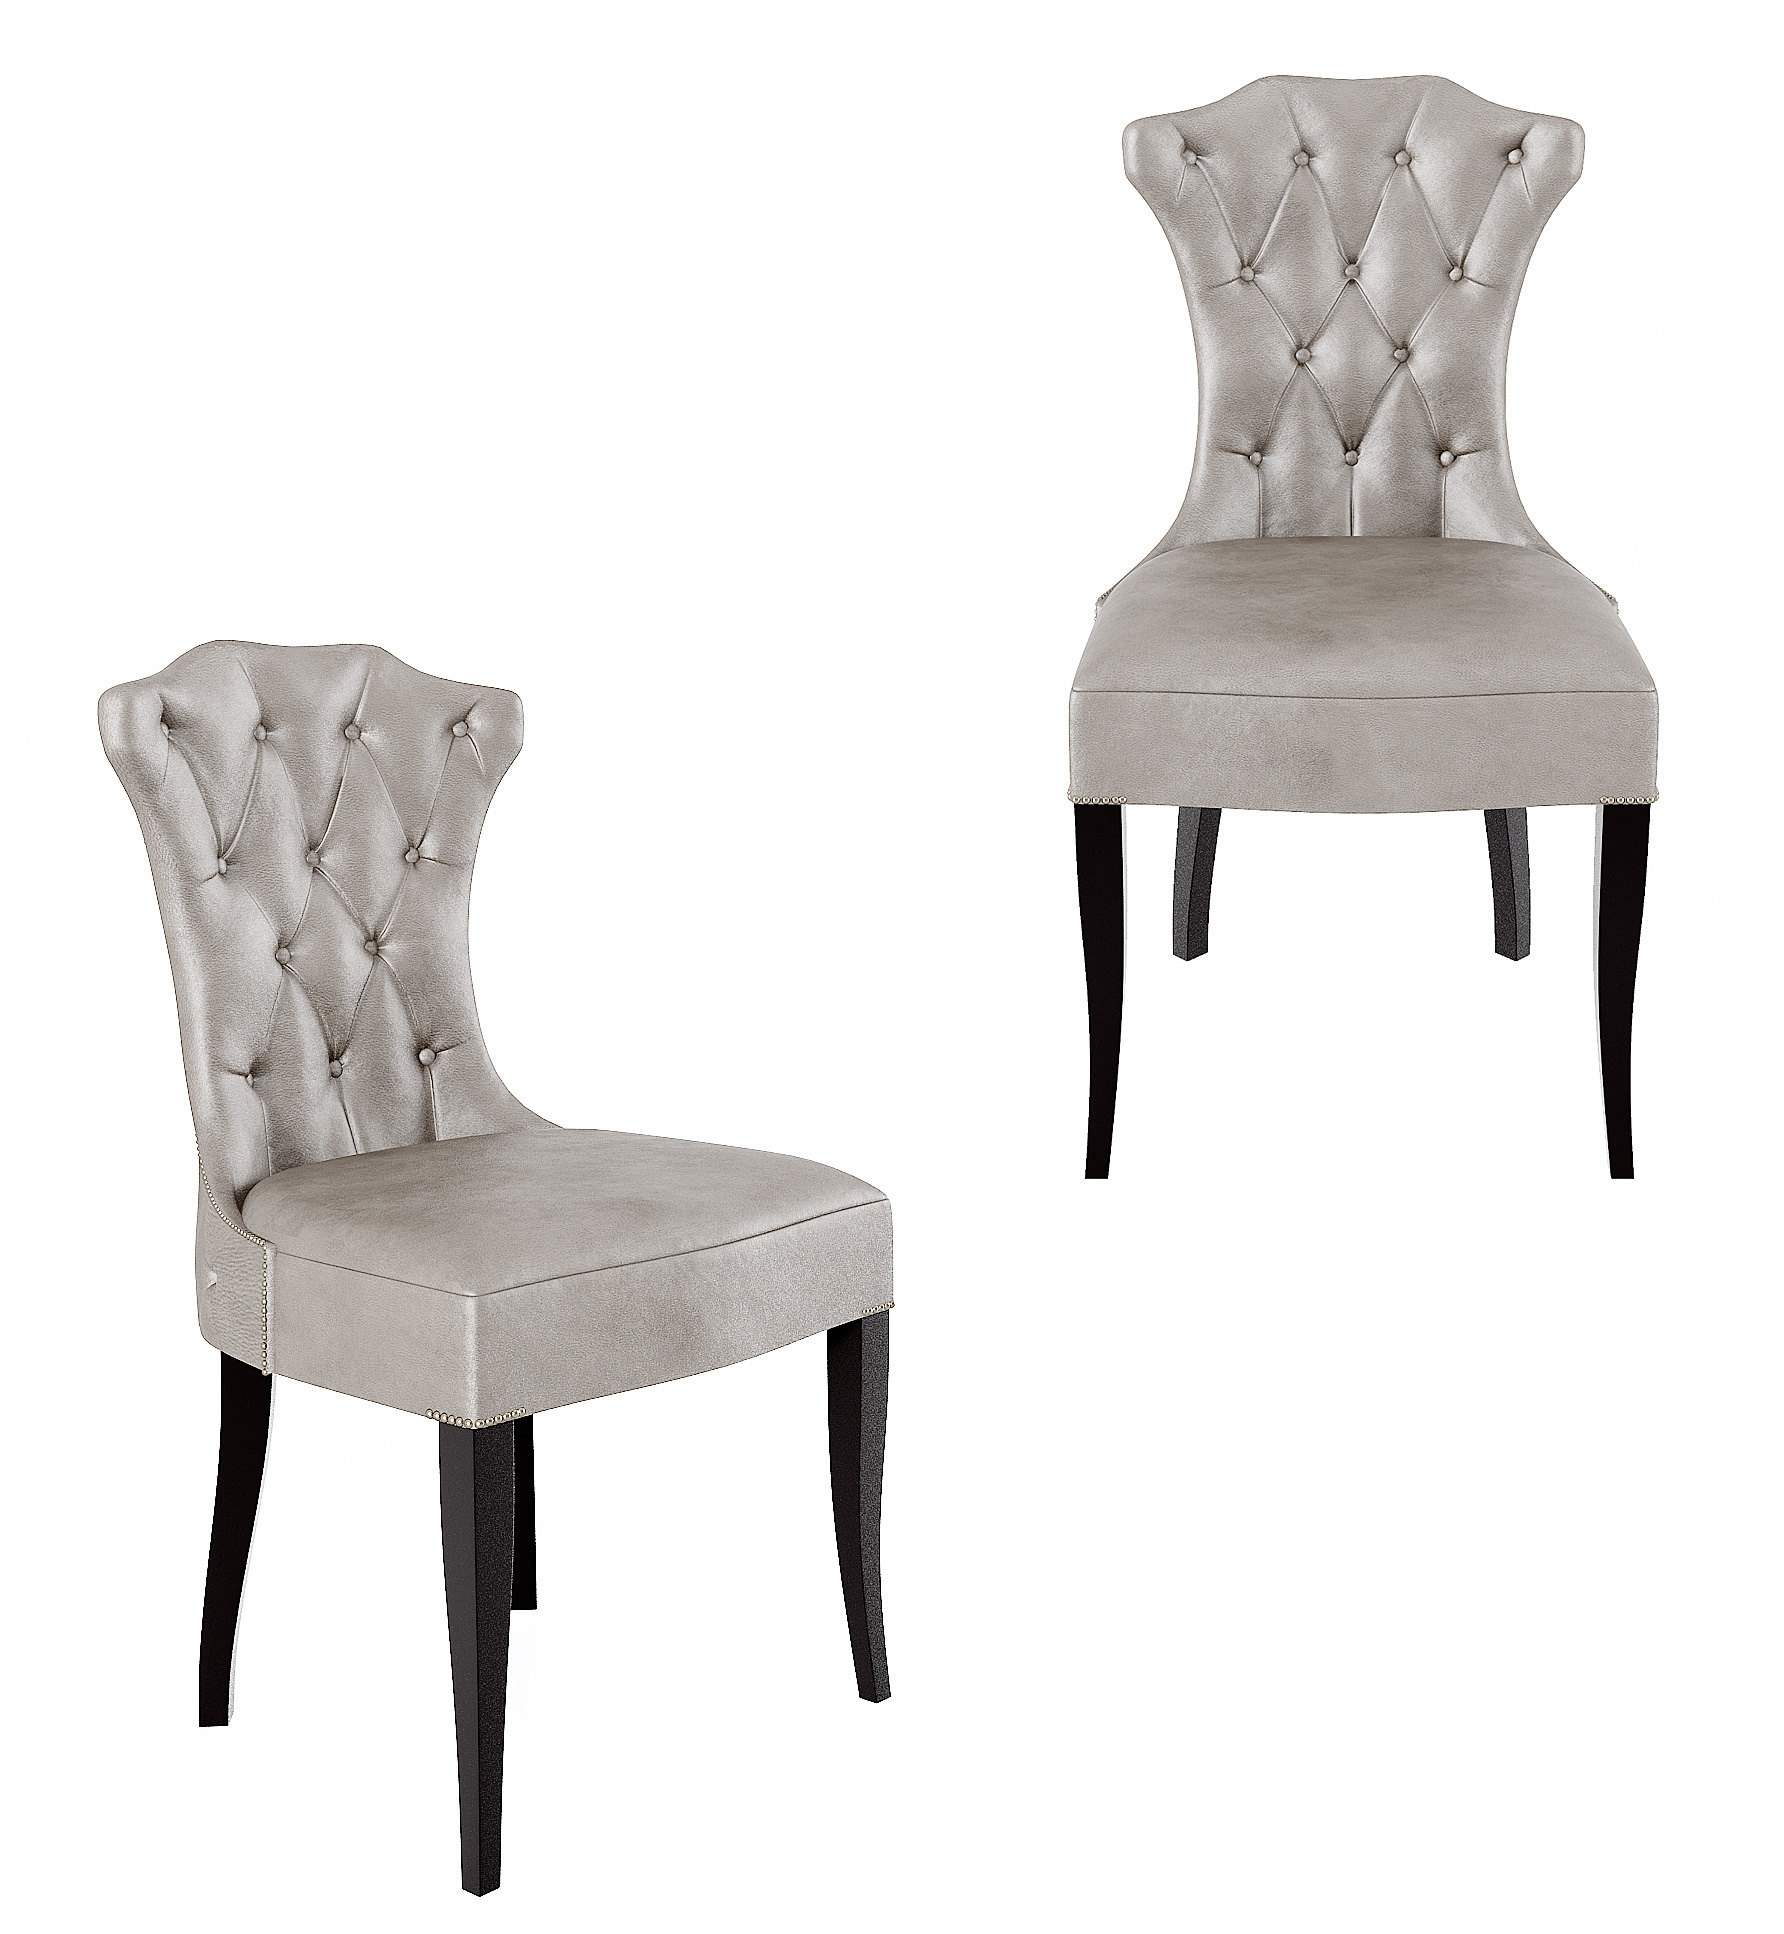 简欧法式皮革餐椅,皮质座椅,3d模型下载